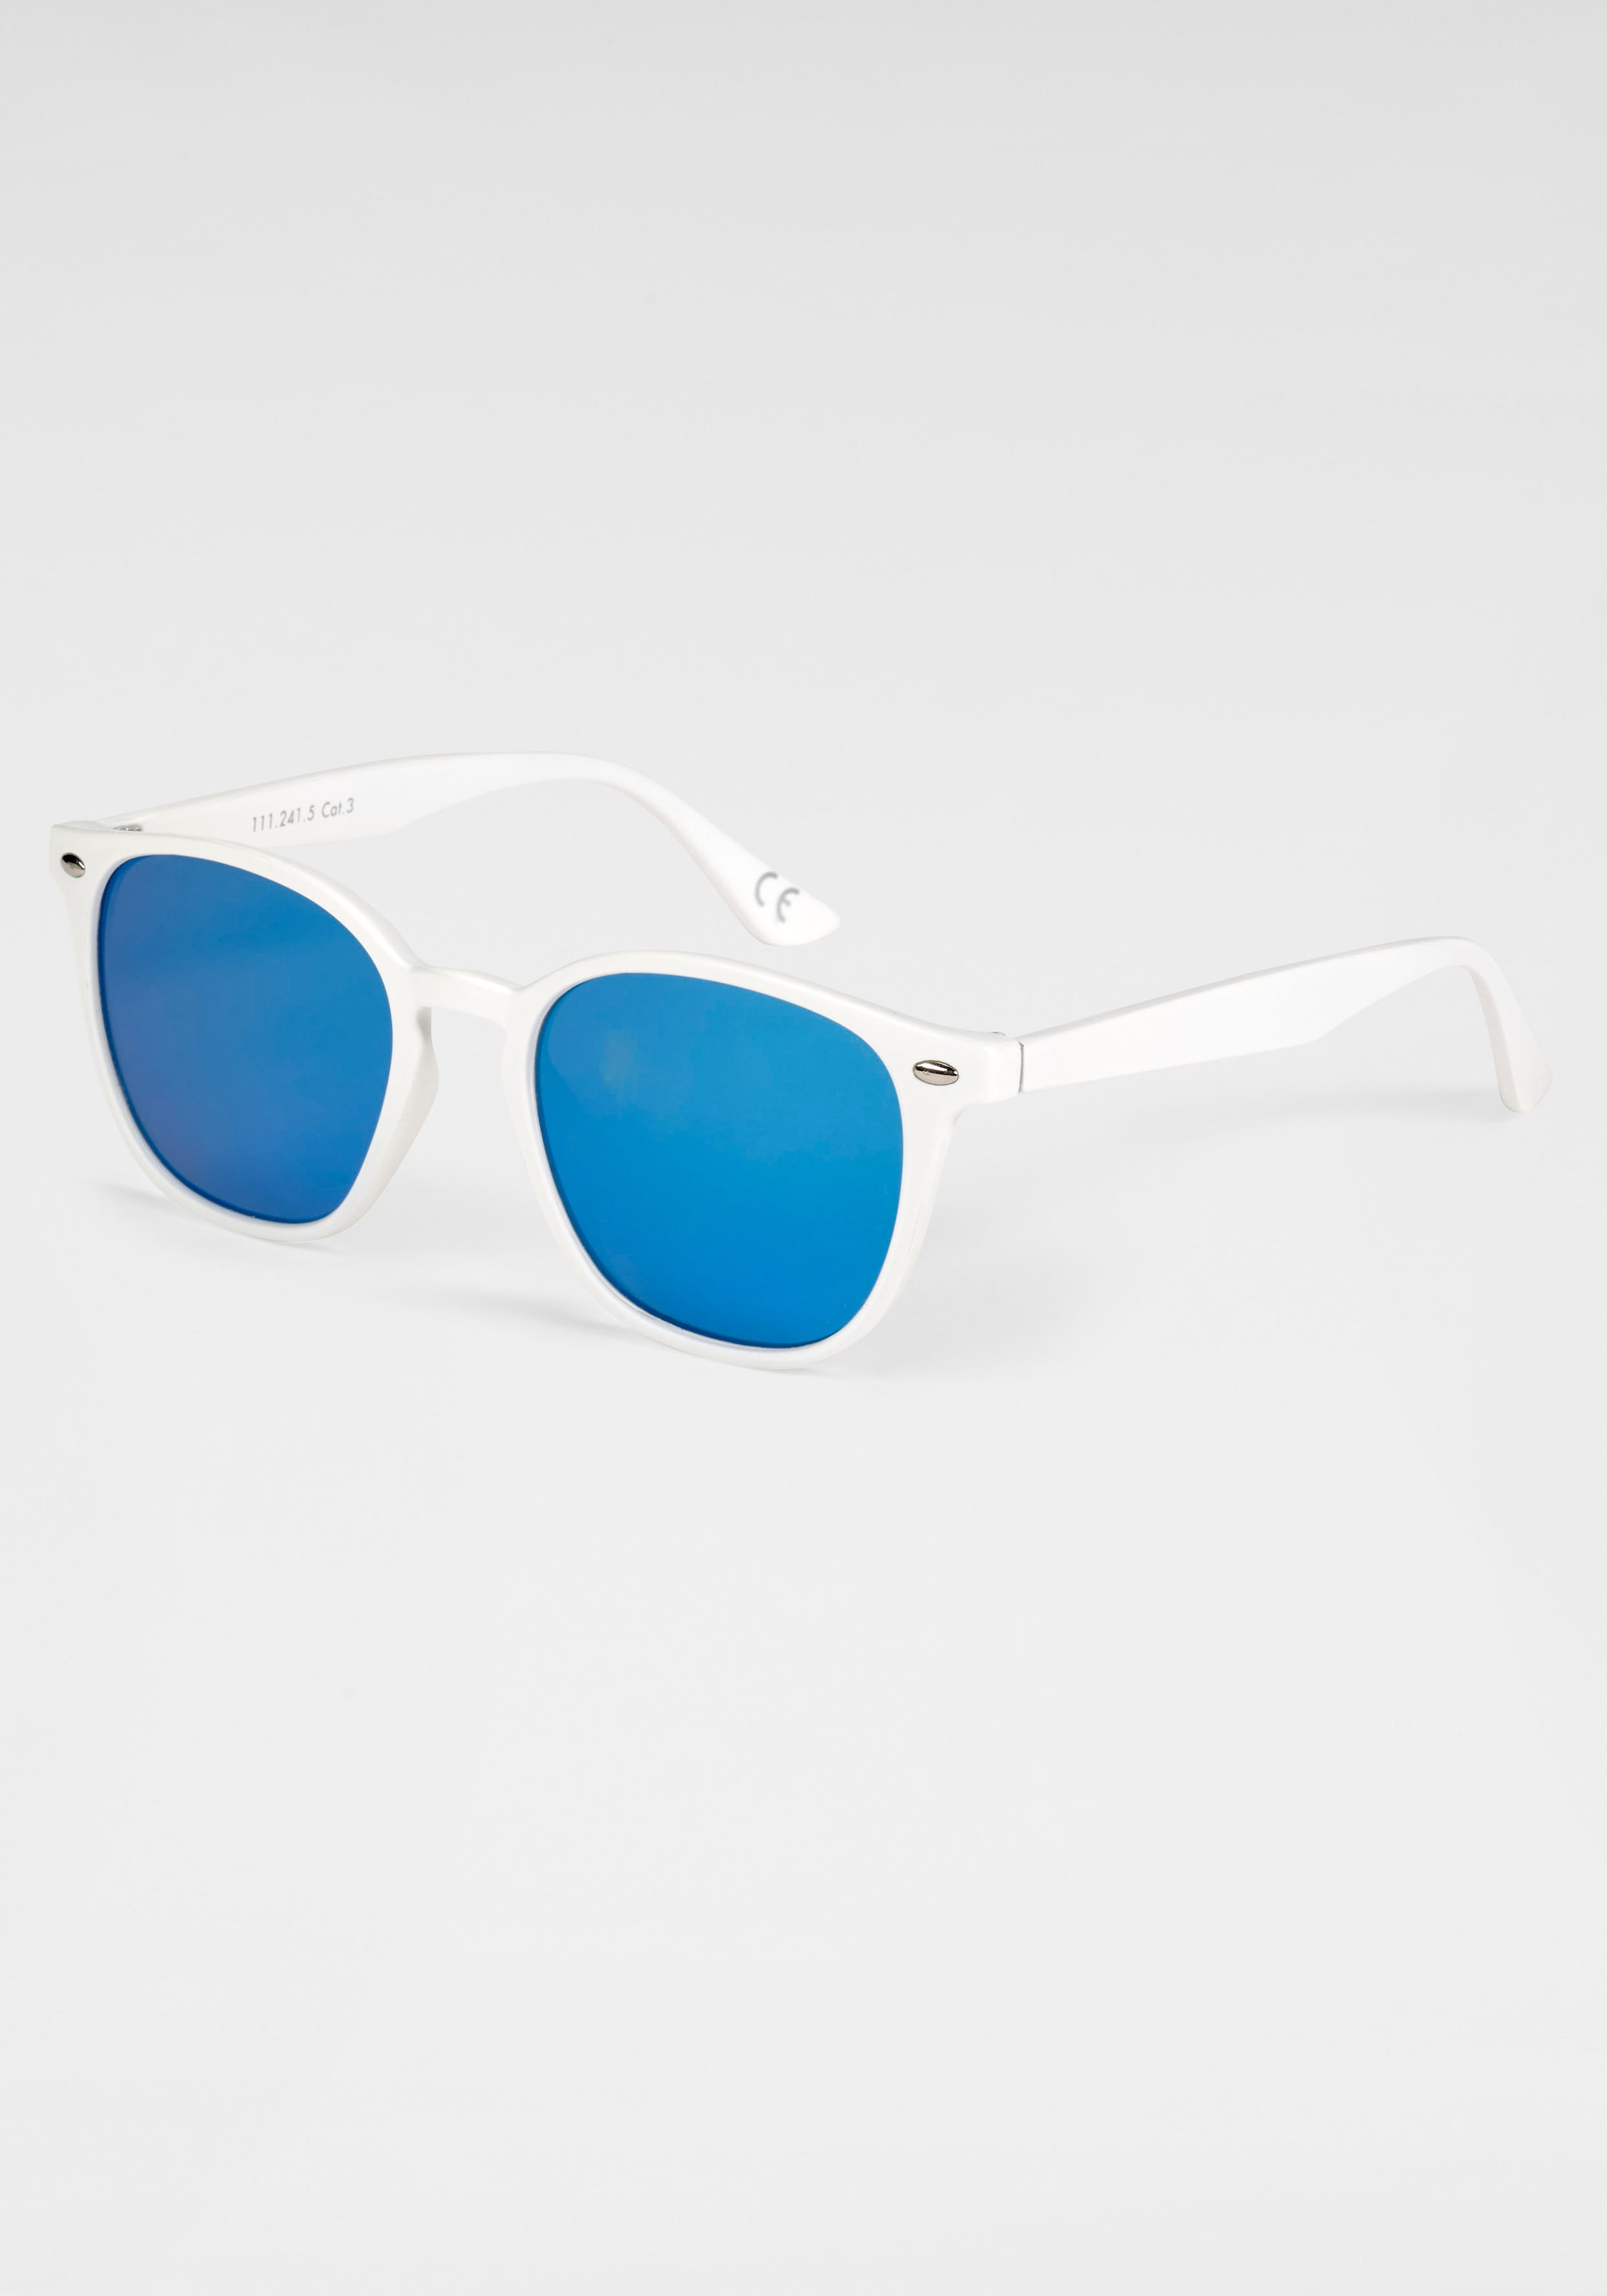 PRIMETTA Eyewear Sonnenbrille, Weiße Sonnenbrille mit blau verspiegelten Gläsern